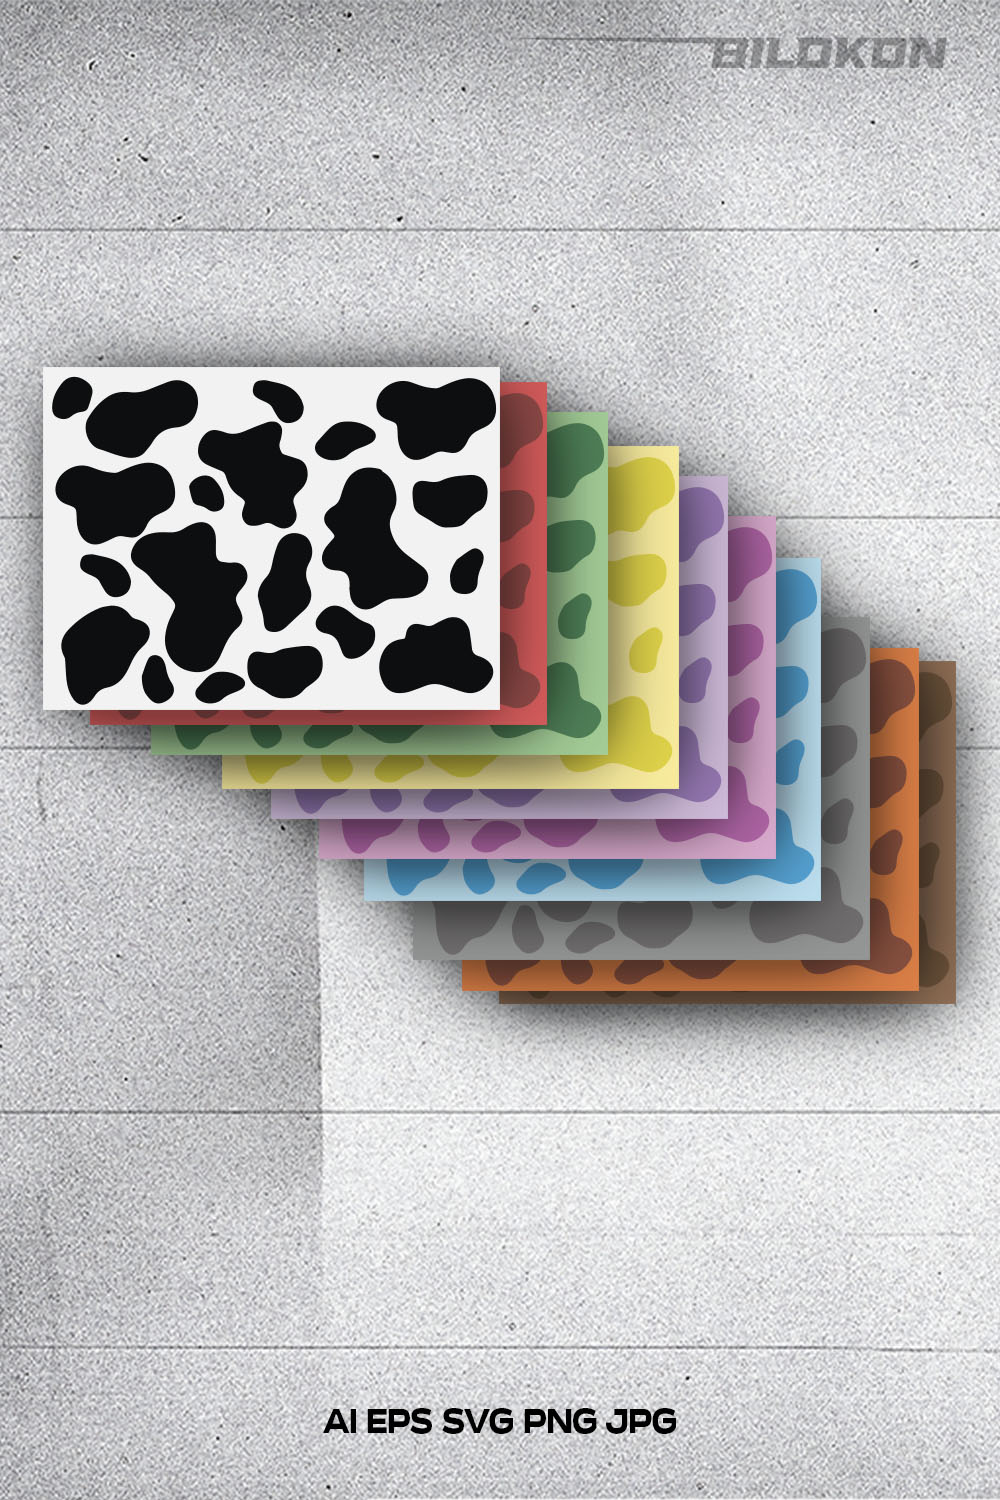 Cow pattern print set colour, Tumbler design, SVG Vector pinterest preview image.